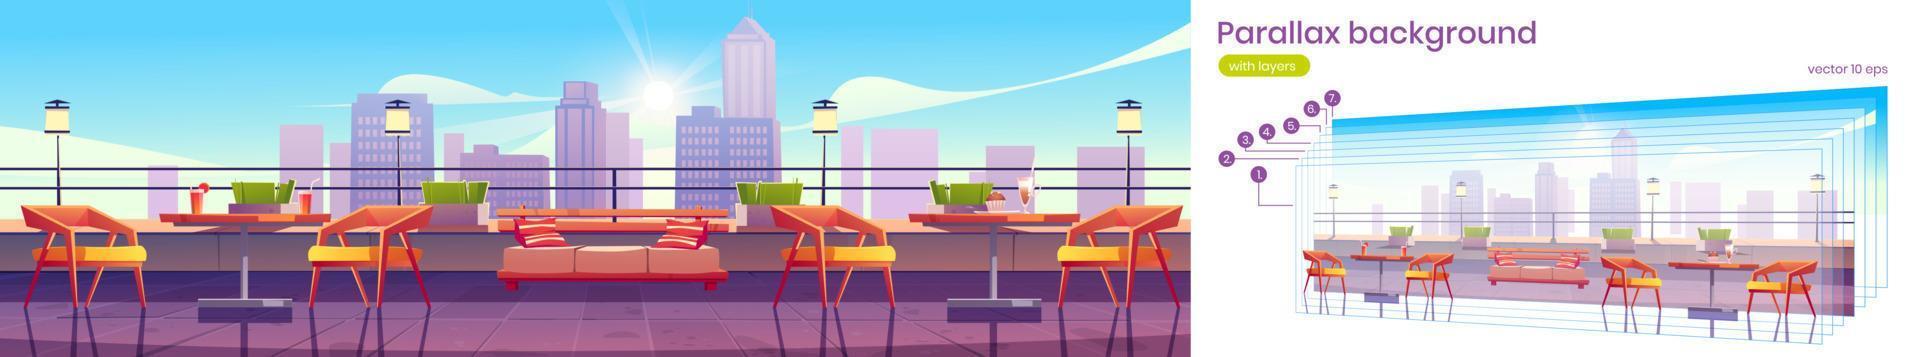 parallax hintergrund mit restaurant auf dem dach vektor